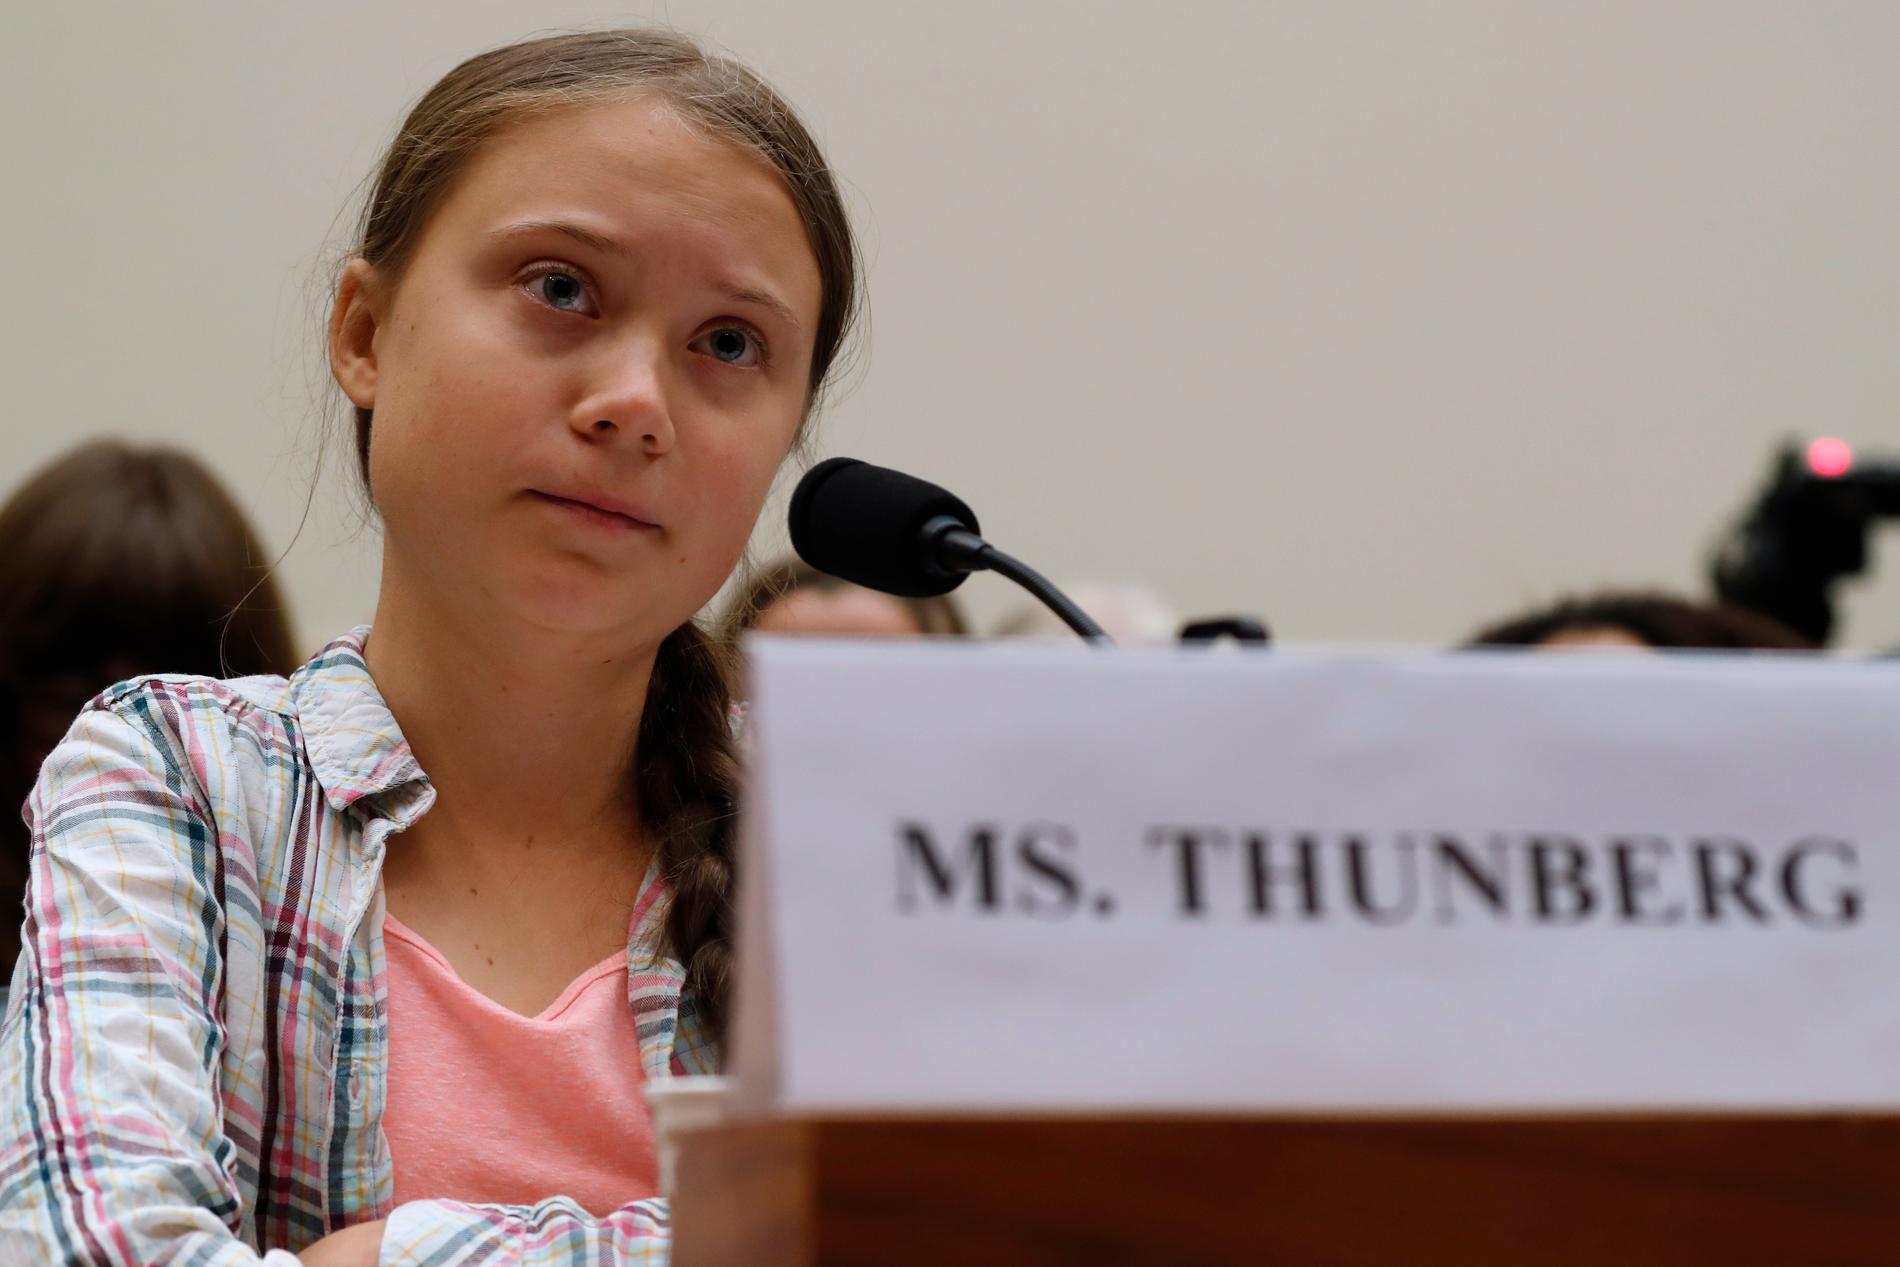 Svenska klimataktivisten Greta Thunberg talar i kongressen i USA:s huvudstad Washington DC.